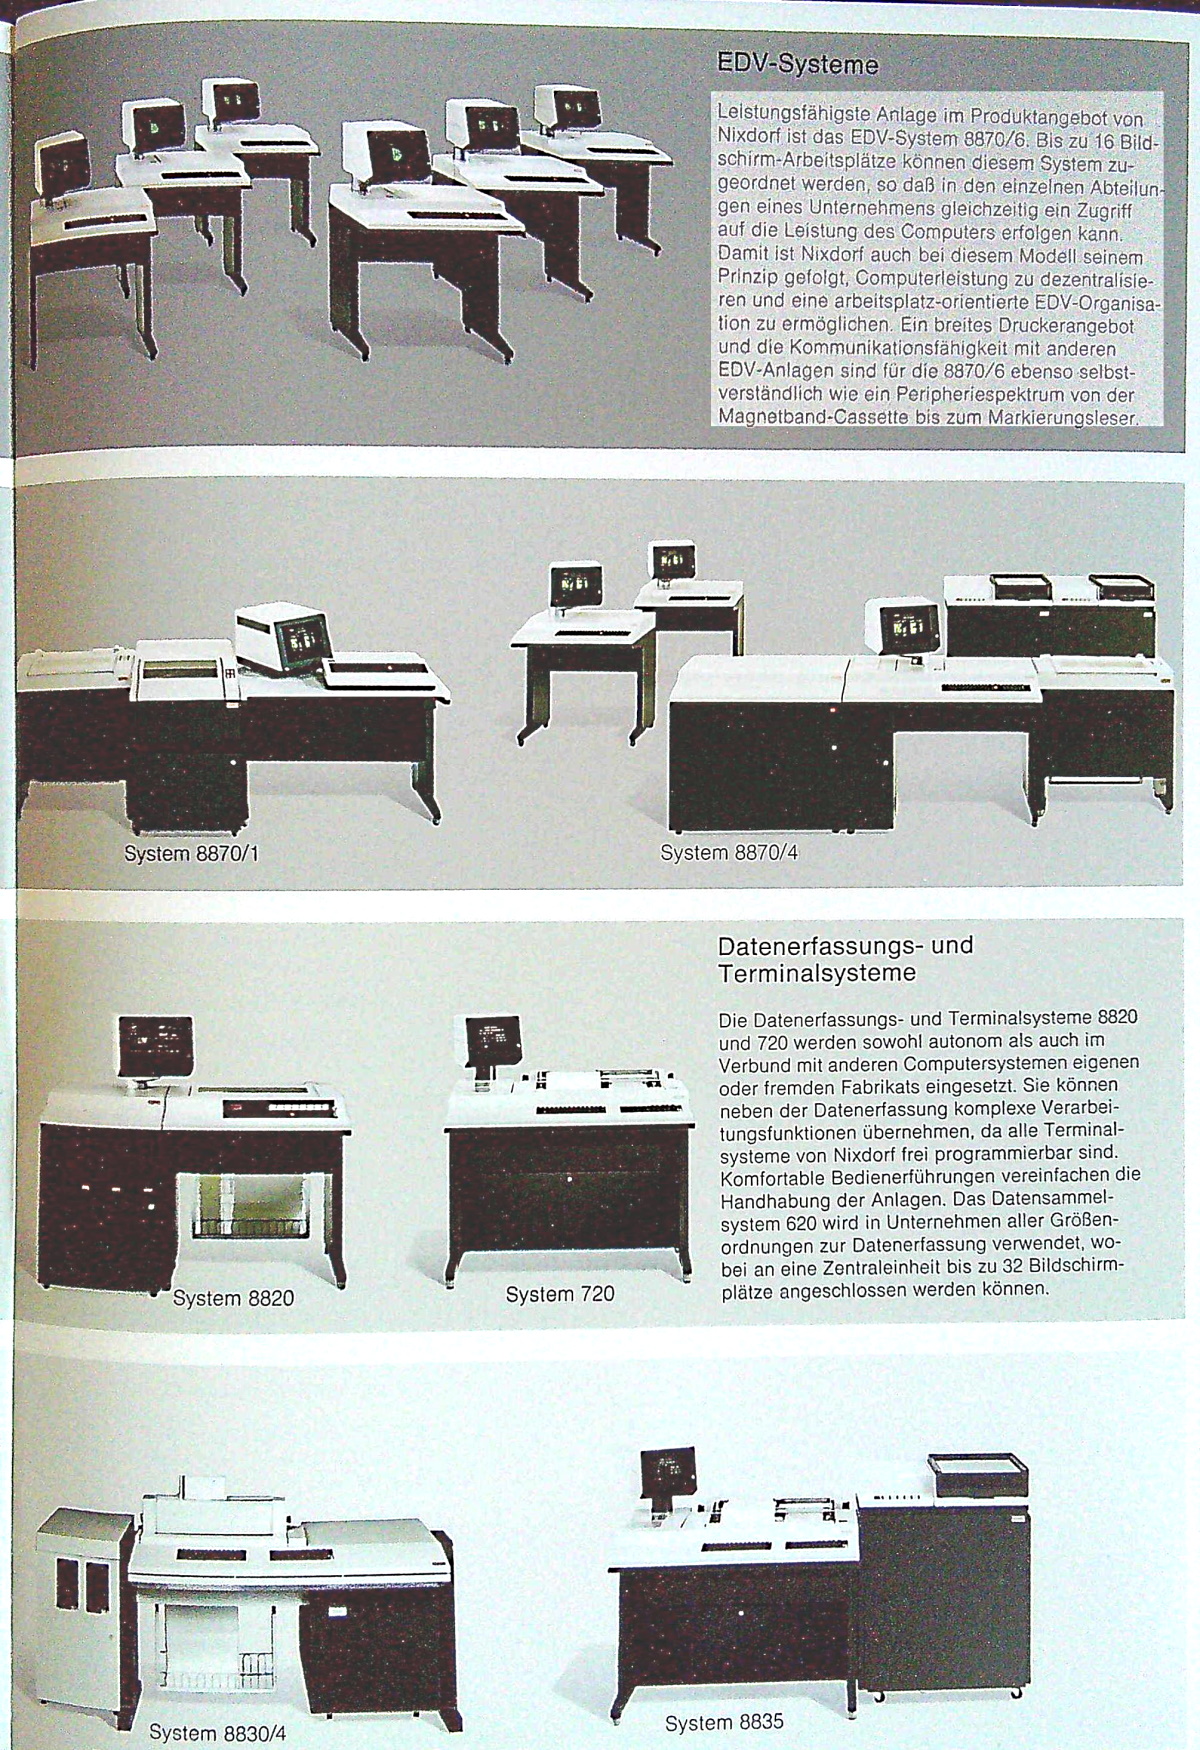 Nixdorf Produkte 1976 8870/1 und 8870/4, 8820, 720, 8830/4 und 8835